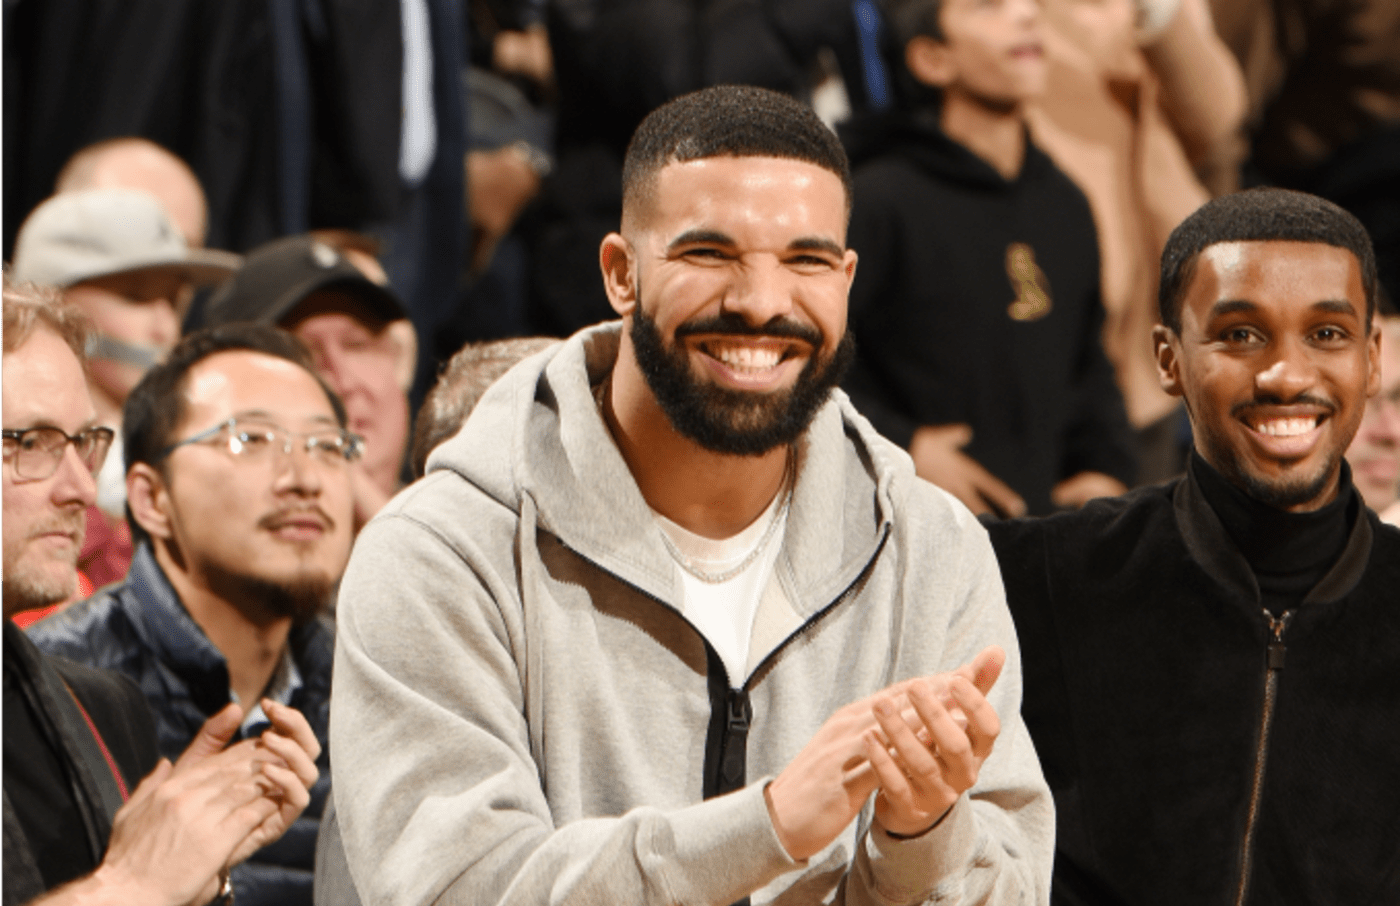 Drake celebrates during the game